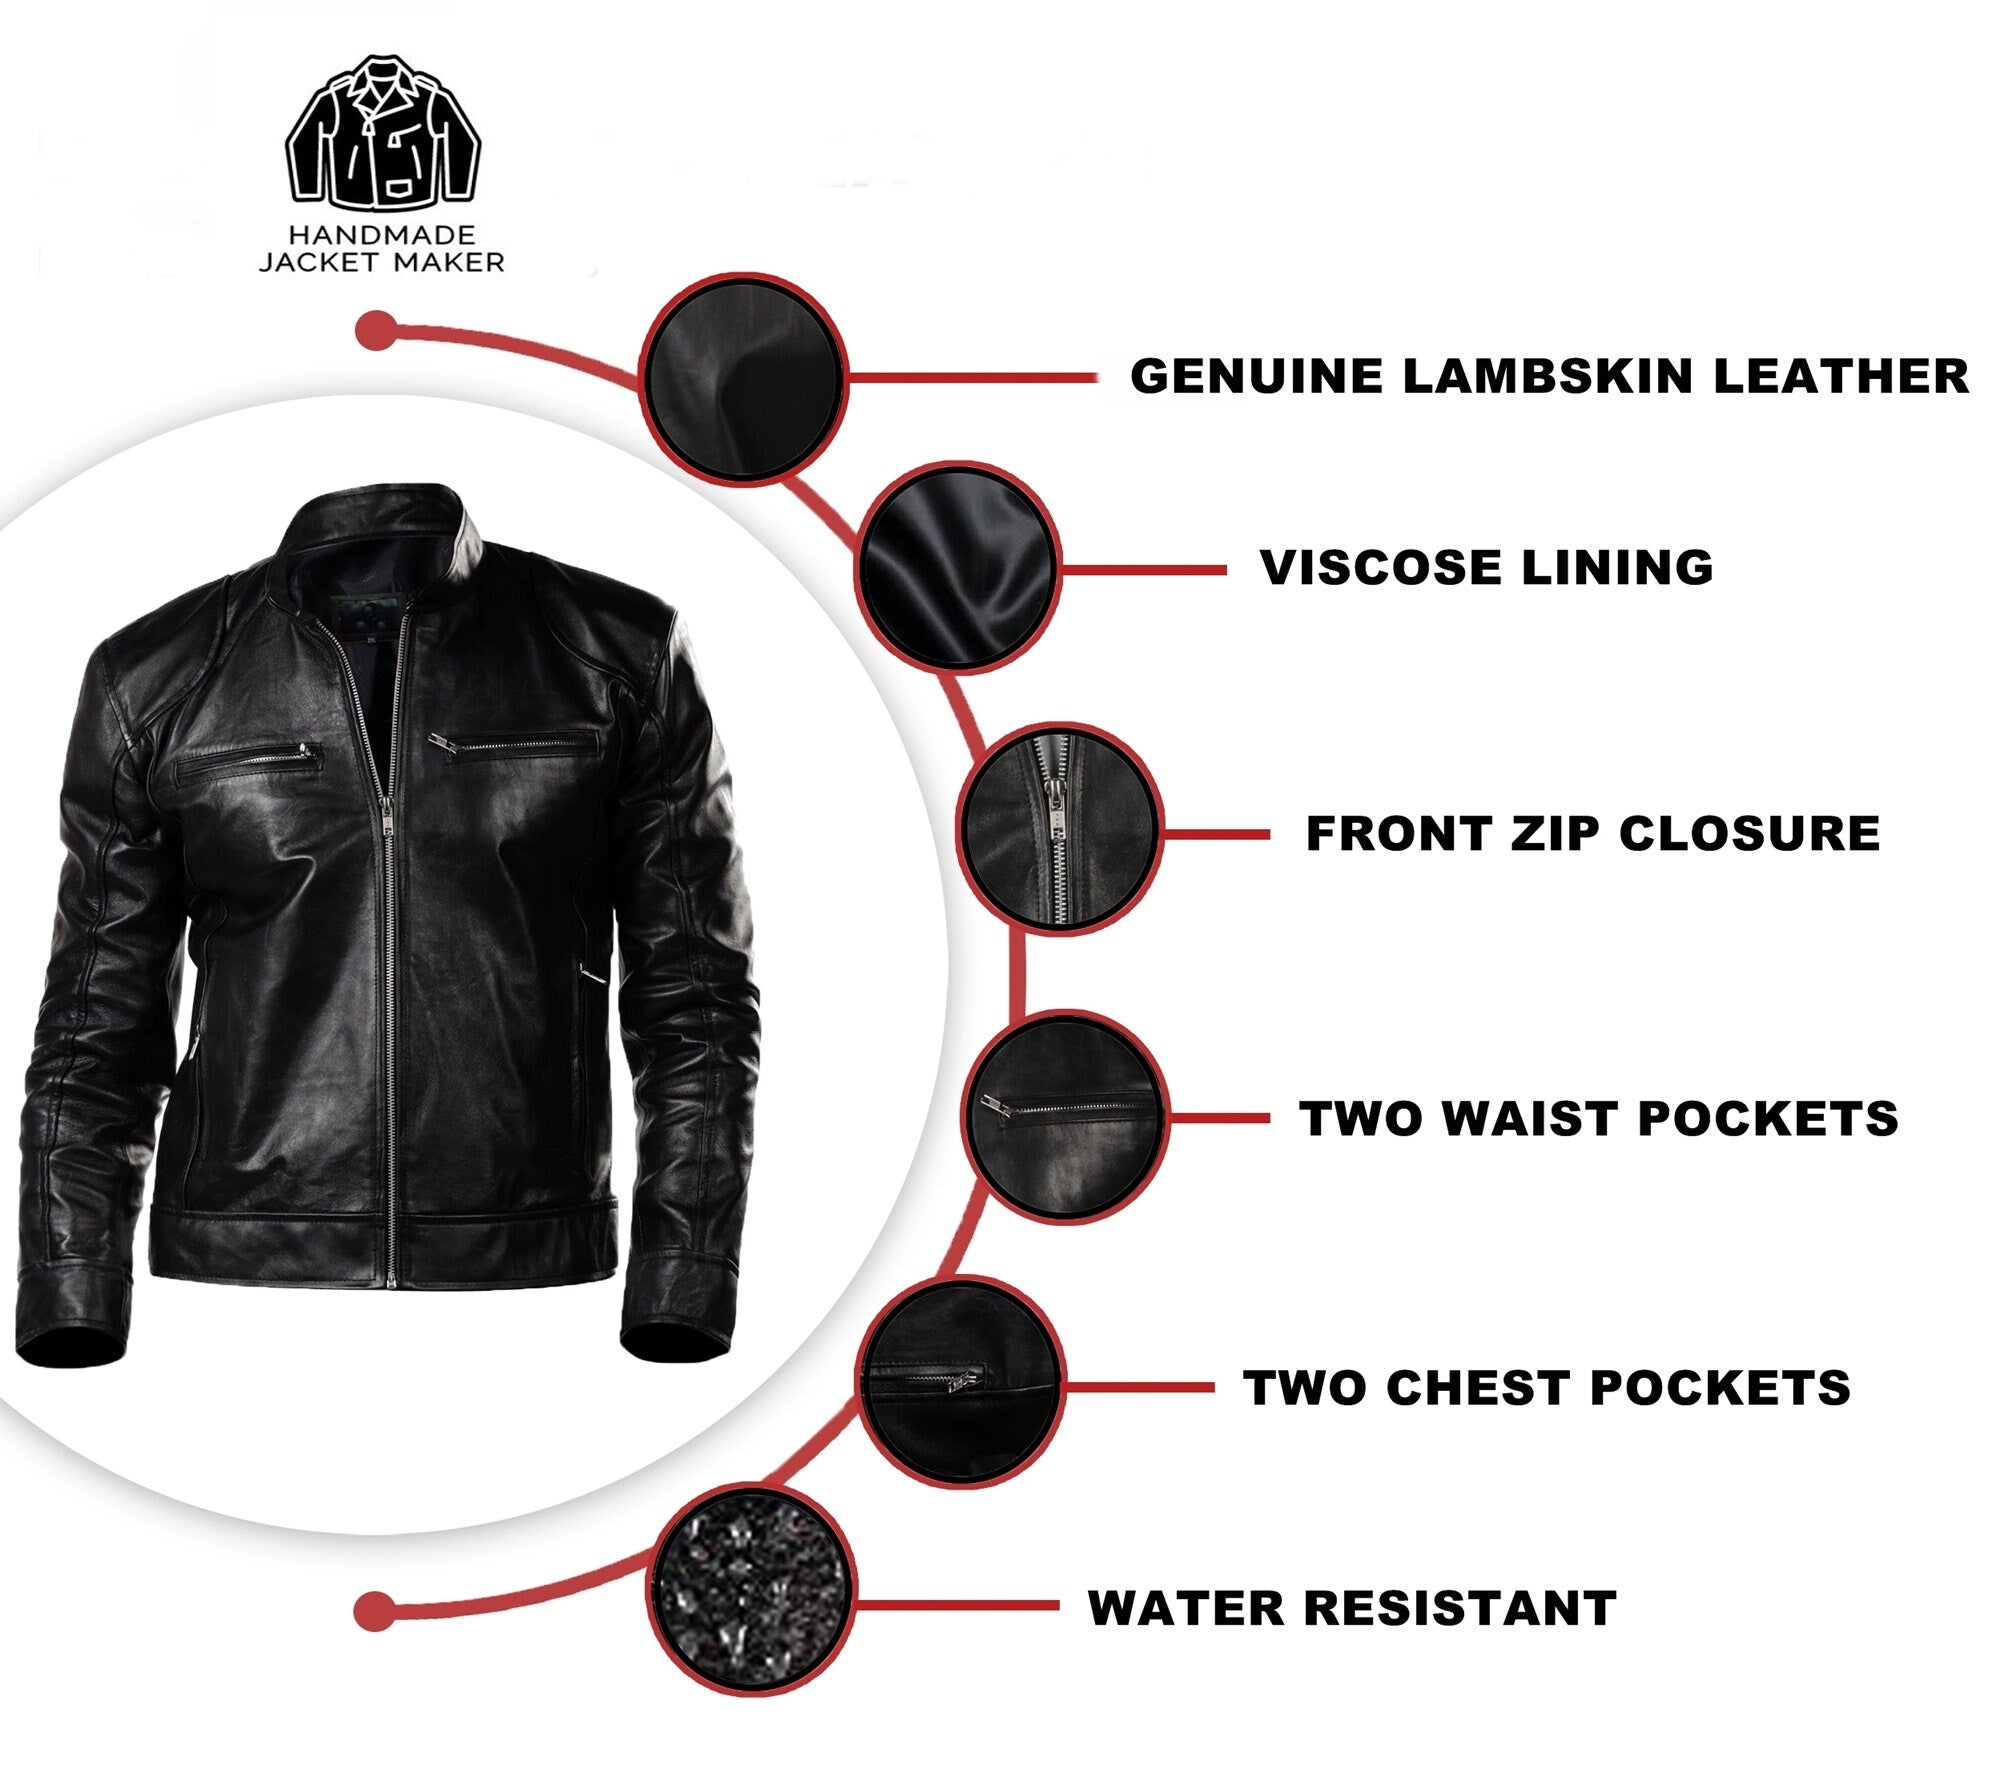 Mens Vintage Black Leather Jacket for Men